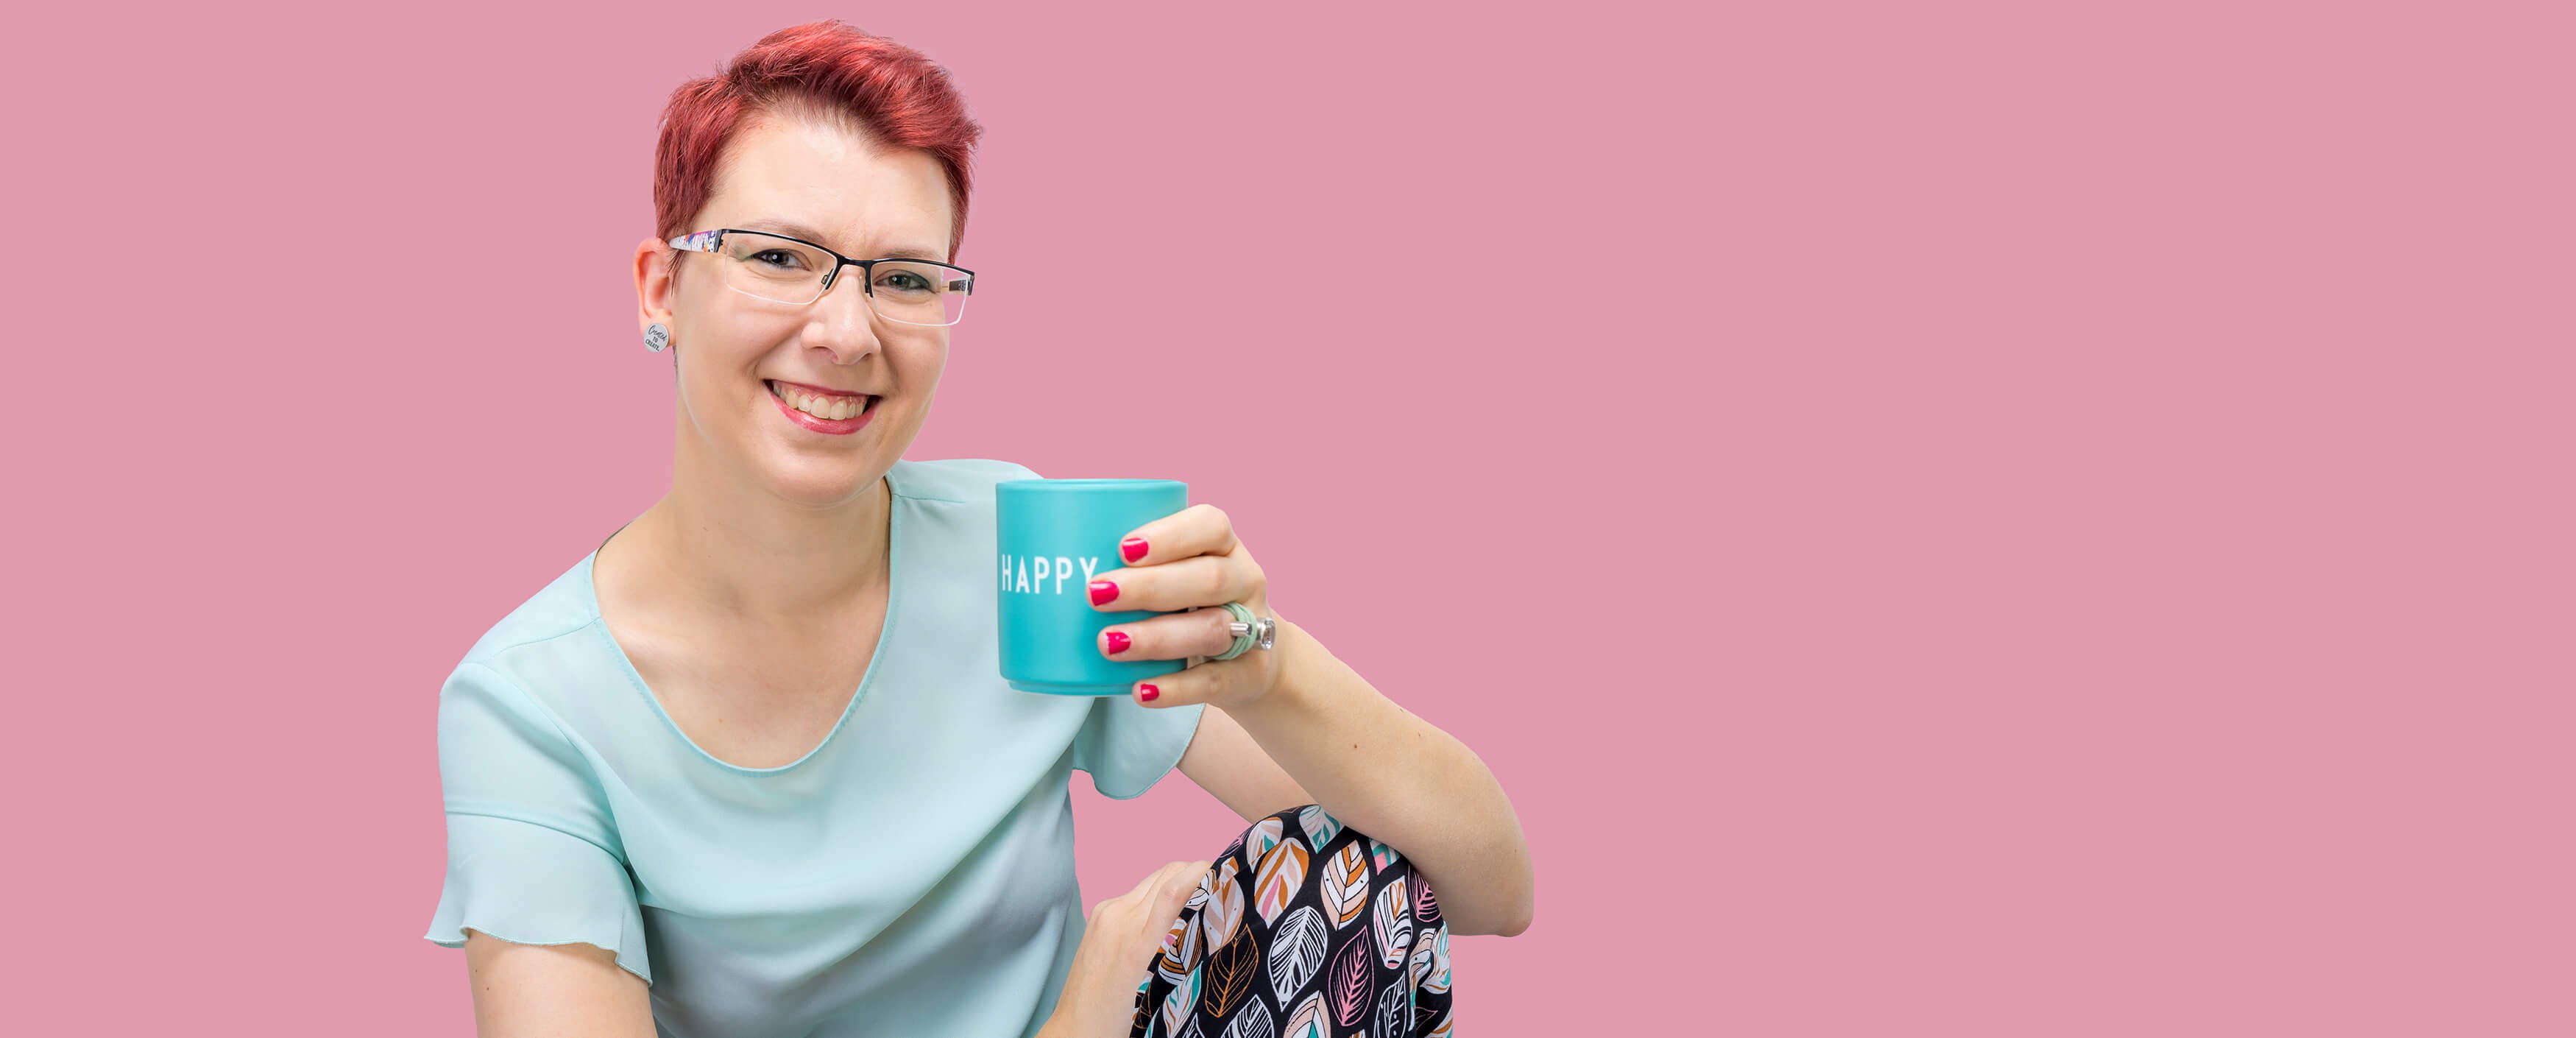 Miriam Hohmann Inhaberin und kreativer Kopf der Marken- und Designagentur FarbFaible